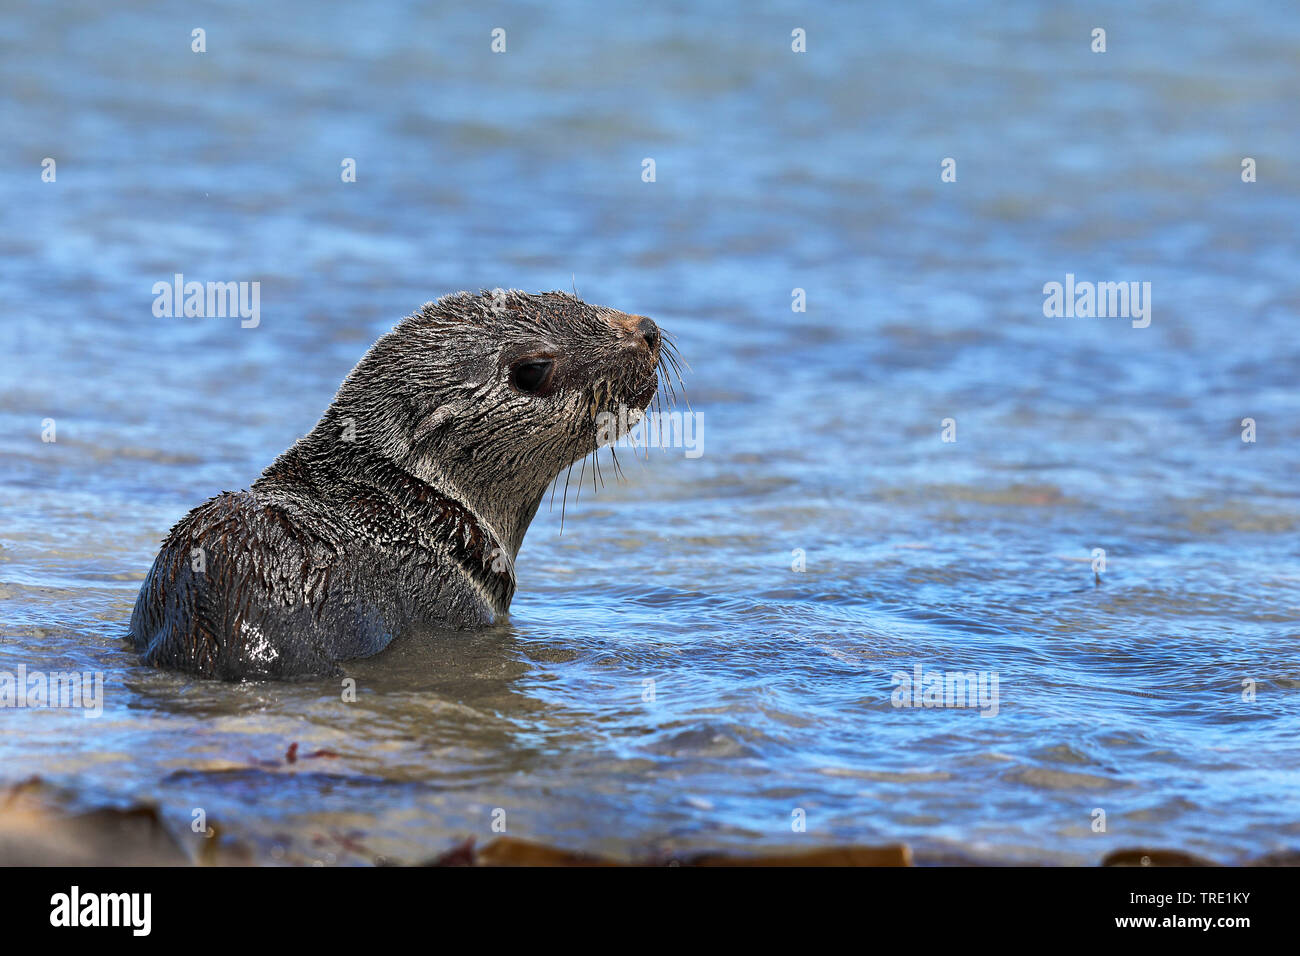 Afrikanische Clawless Otter (Aonyx capensis), die von der Wasserseite liegend, Südafrika, Western Cape, Kap der Guten Hoffnung Nationalpark Stockfoto